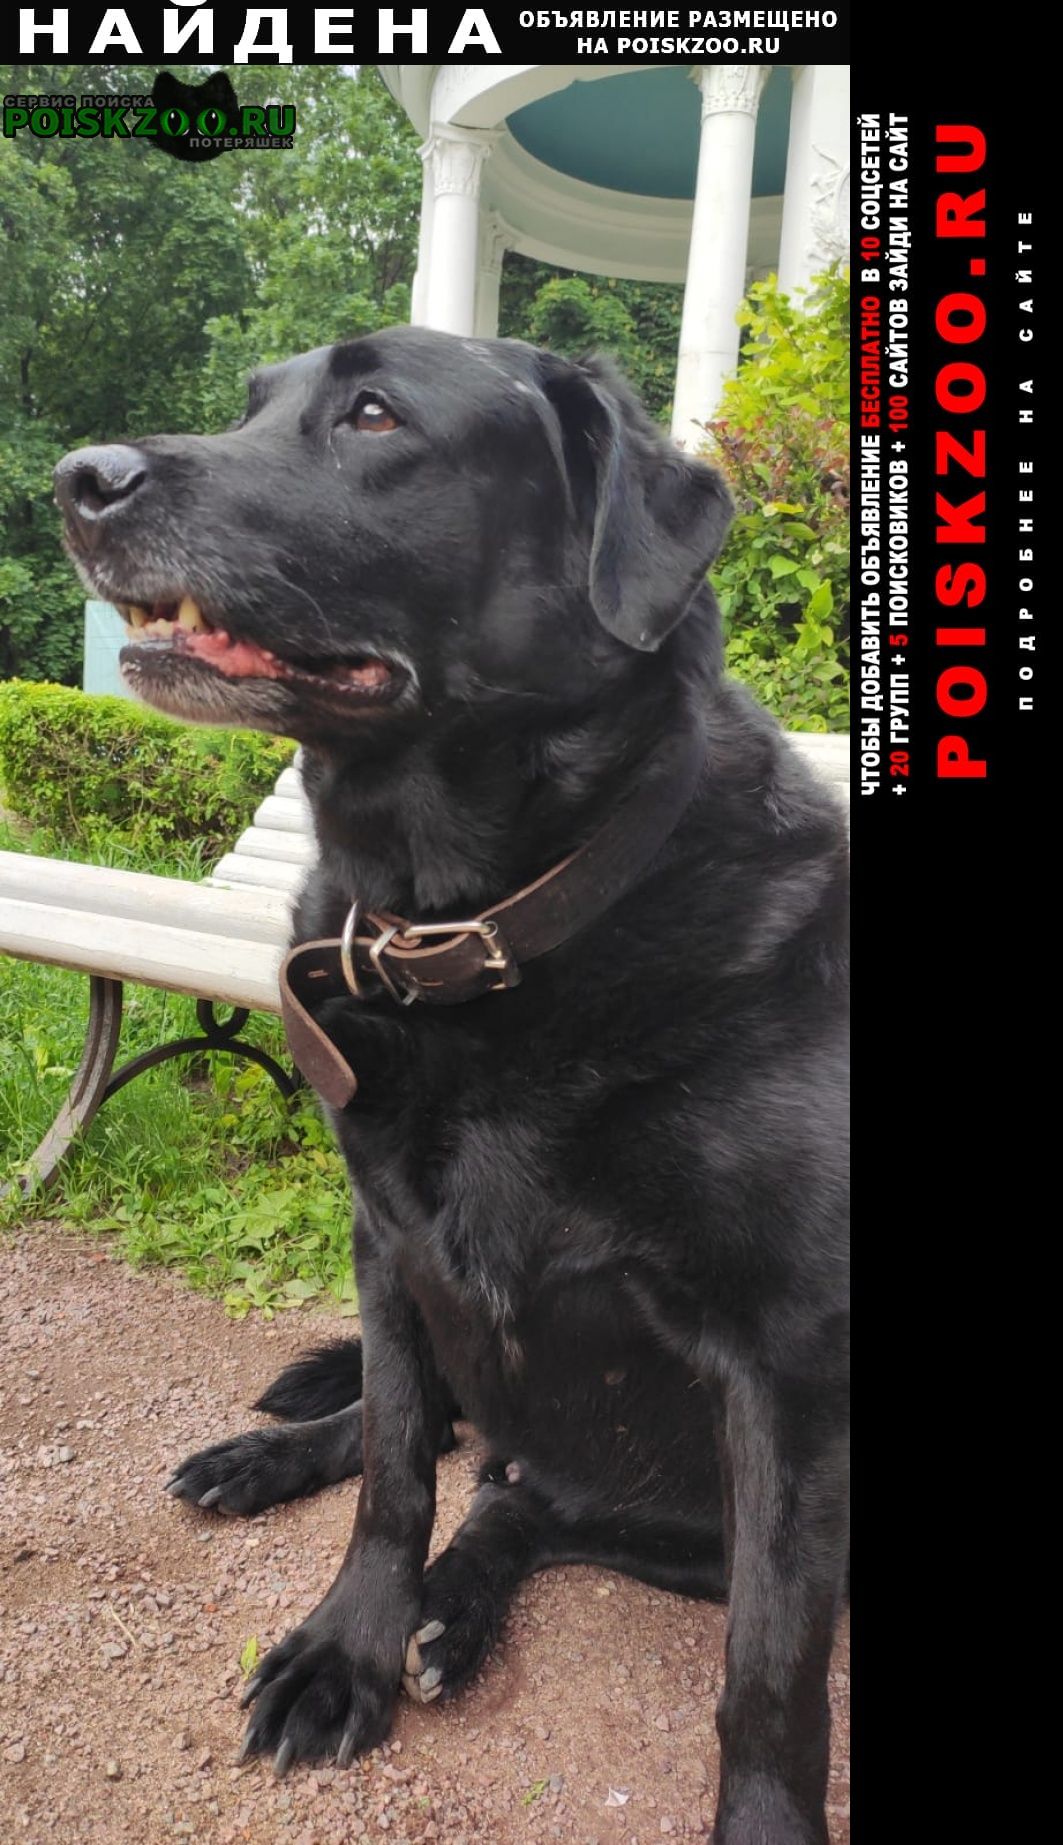 Москва Найдена собака кобель чёрный лабрадор